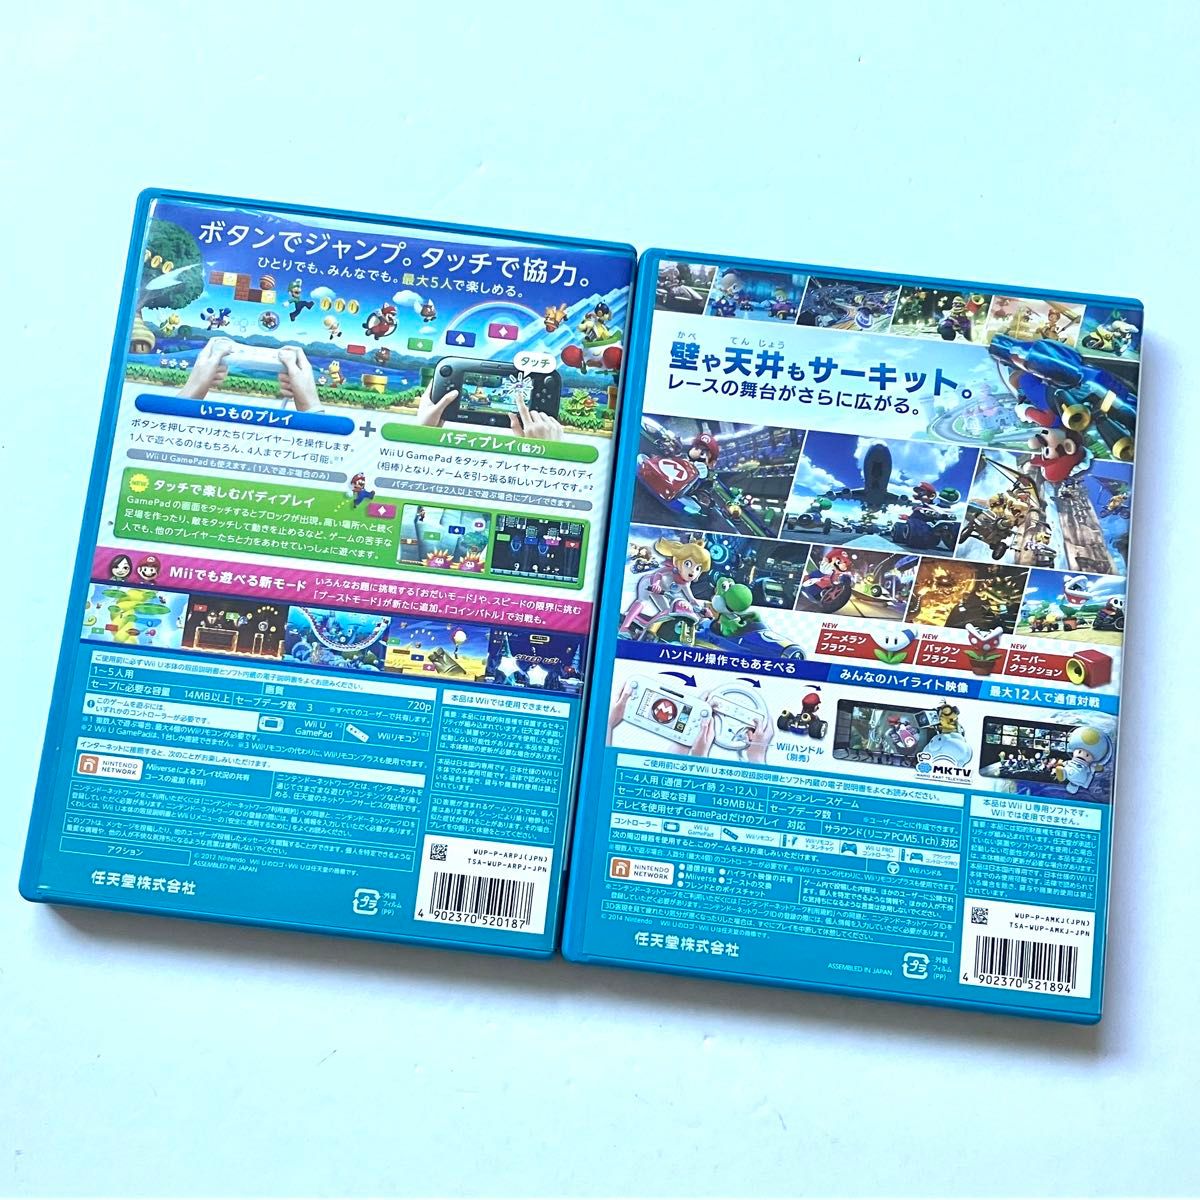 WiiU NEWスーパーマリオブラザーズU  マリオカート8  まとめ売り